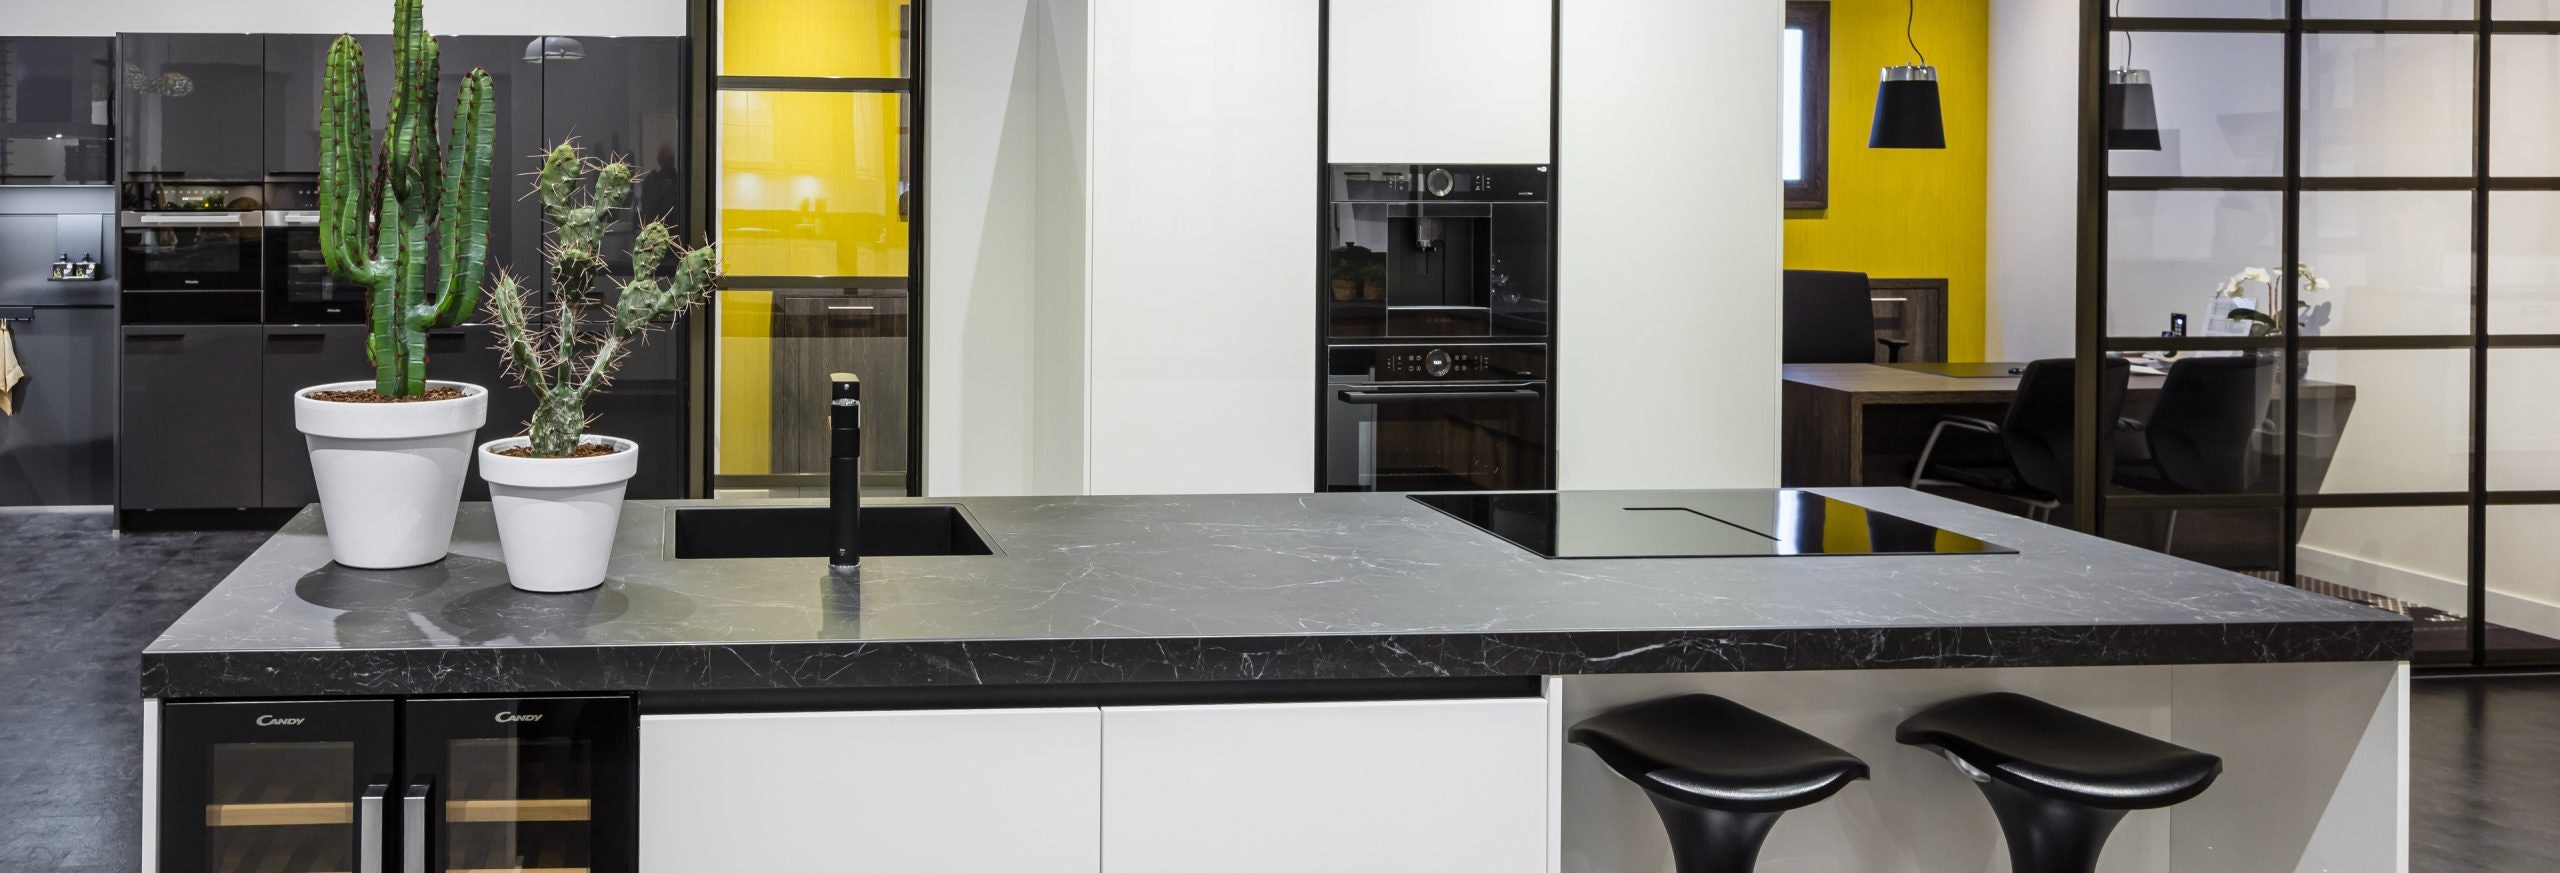 Keuken 1400235 - Witte kookeiland keuken met zwarte elementen